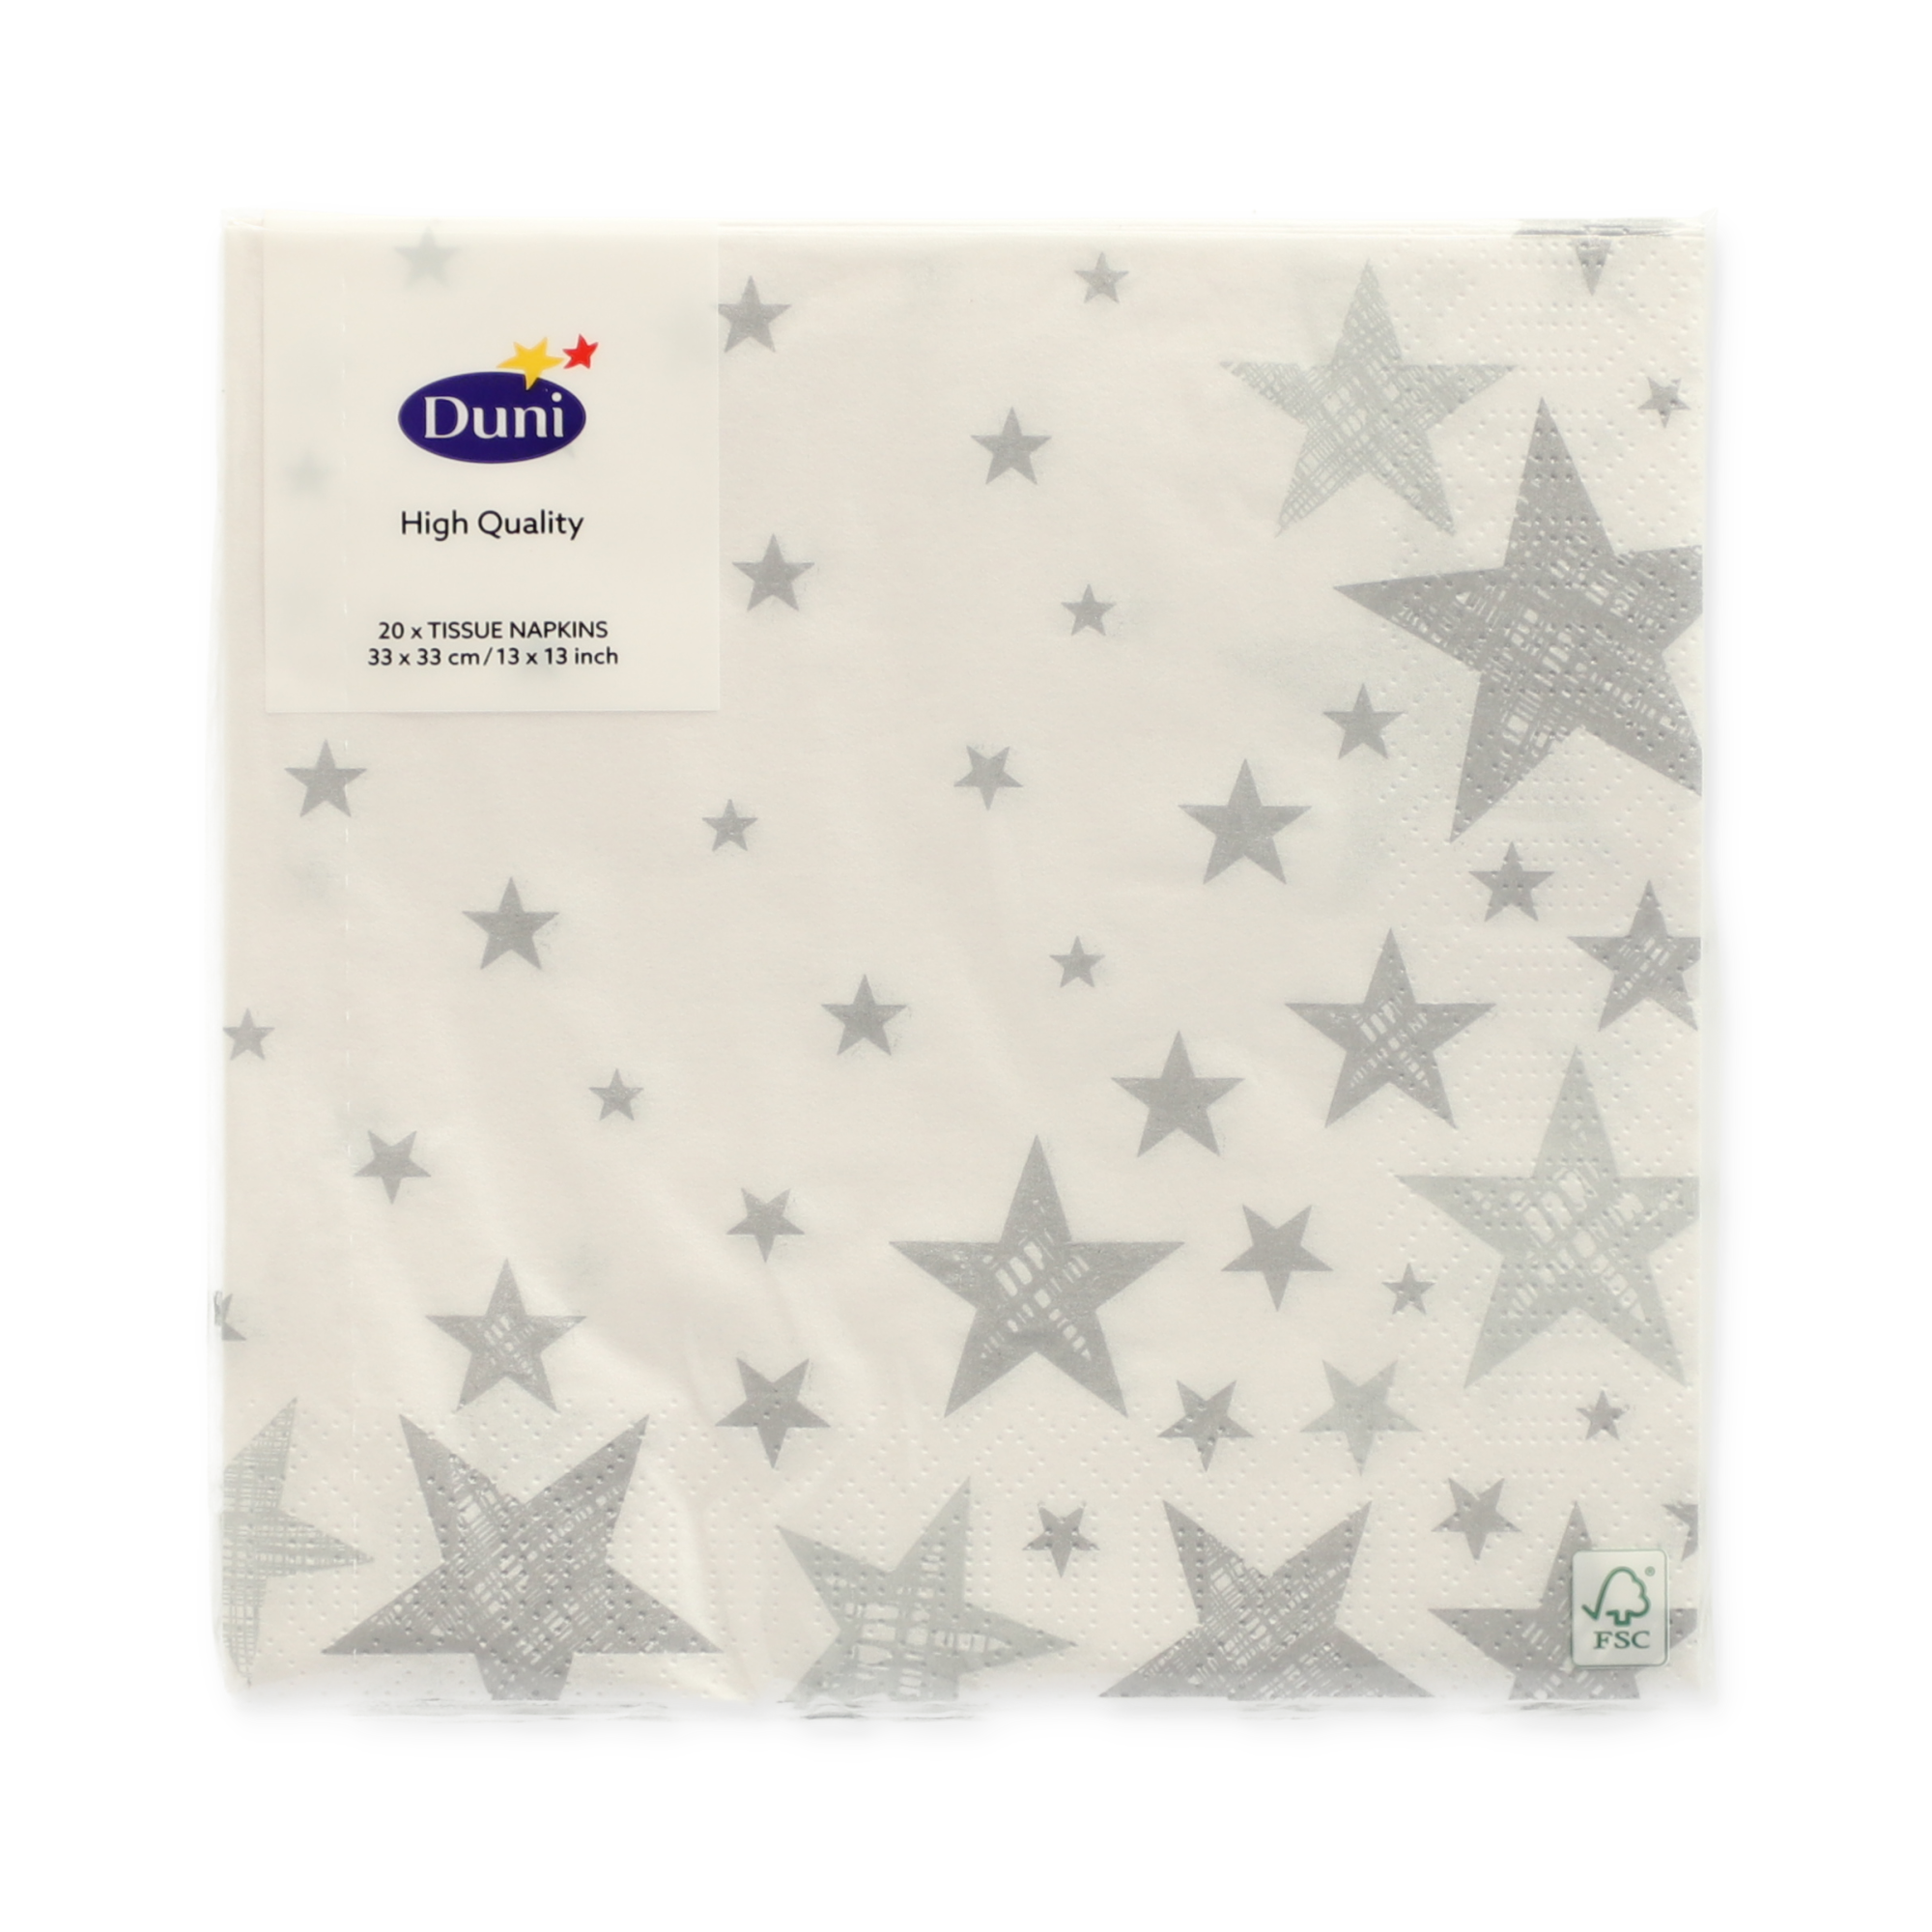 Servietten 'Shining Star White' weiß/silbern 33 x 33 cm 20 Stück + product picture